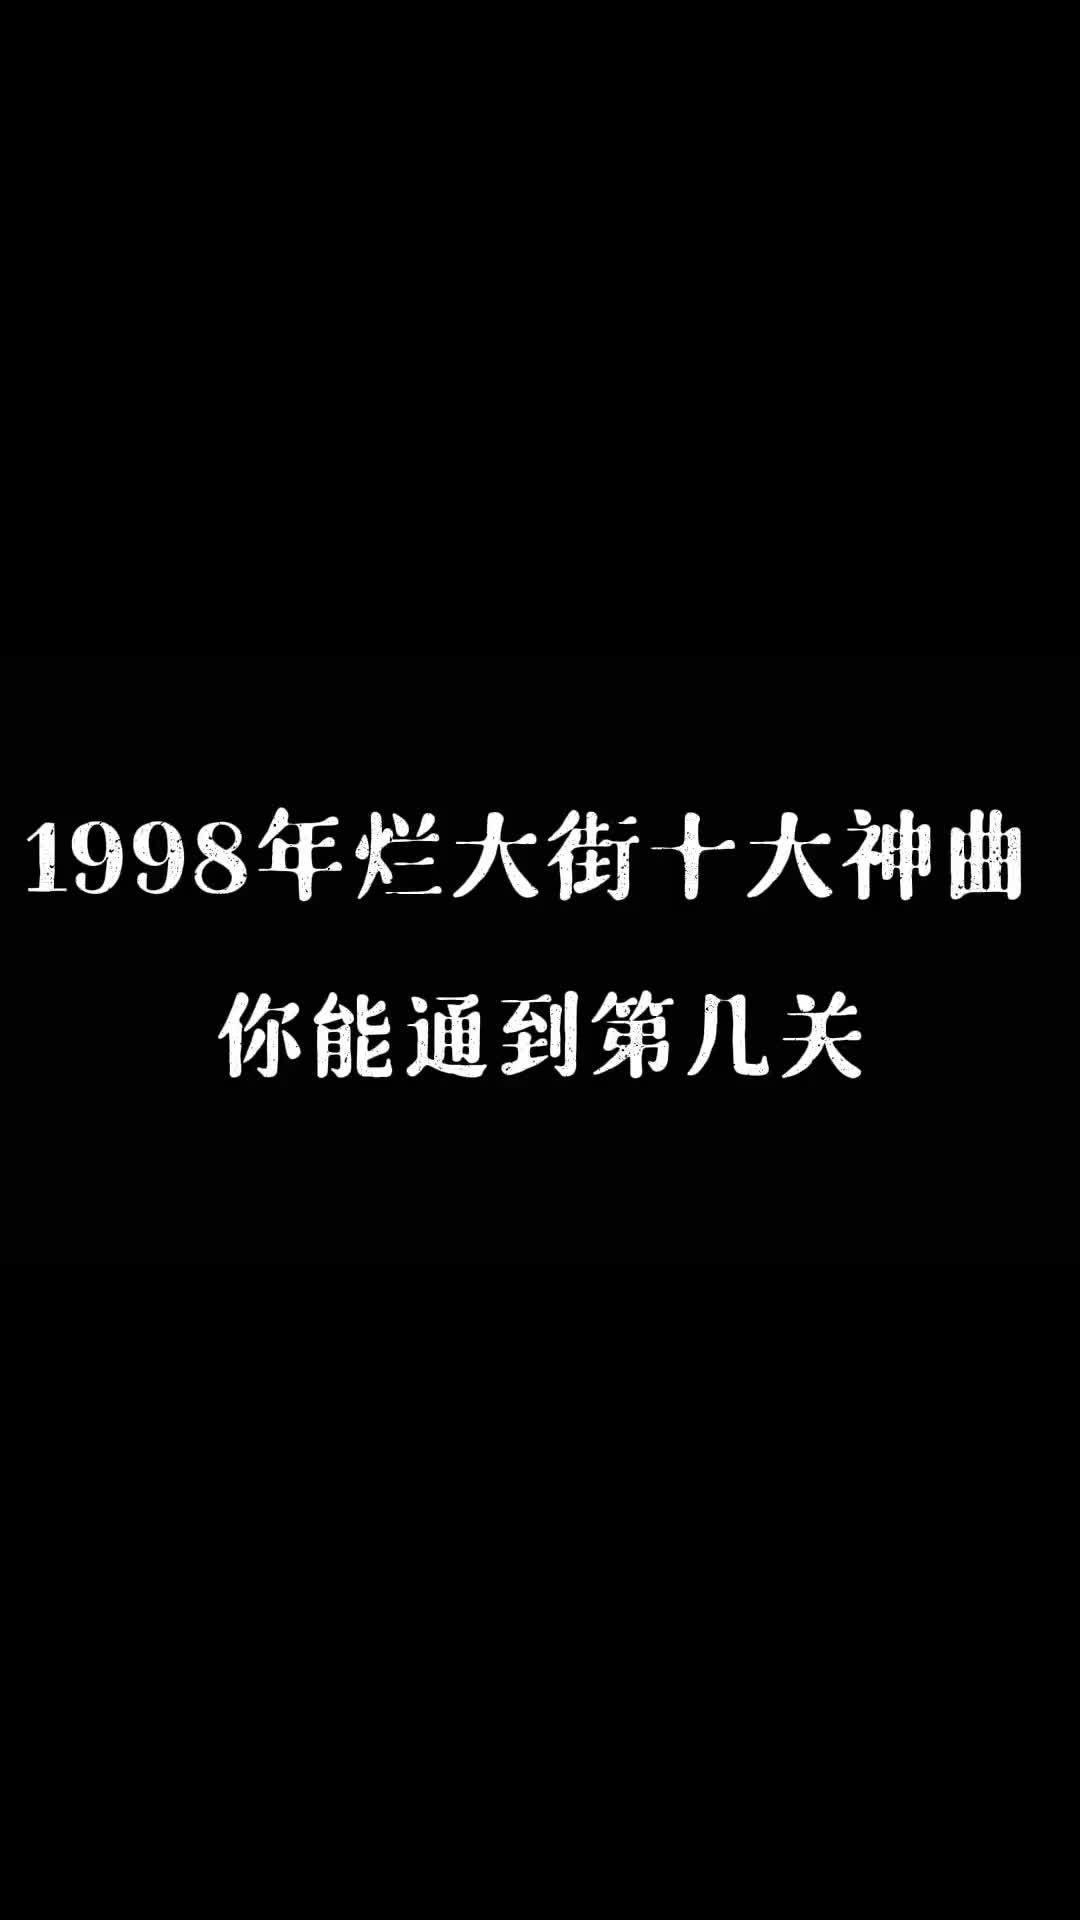 1998年烂大街的歌曲，你听过几首？ #刘德华 #任贤齐 #张宇 #经典老歌 #热门音乐